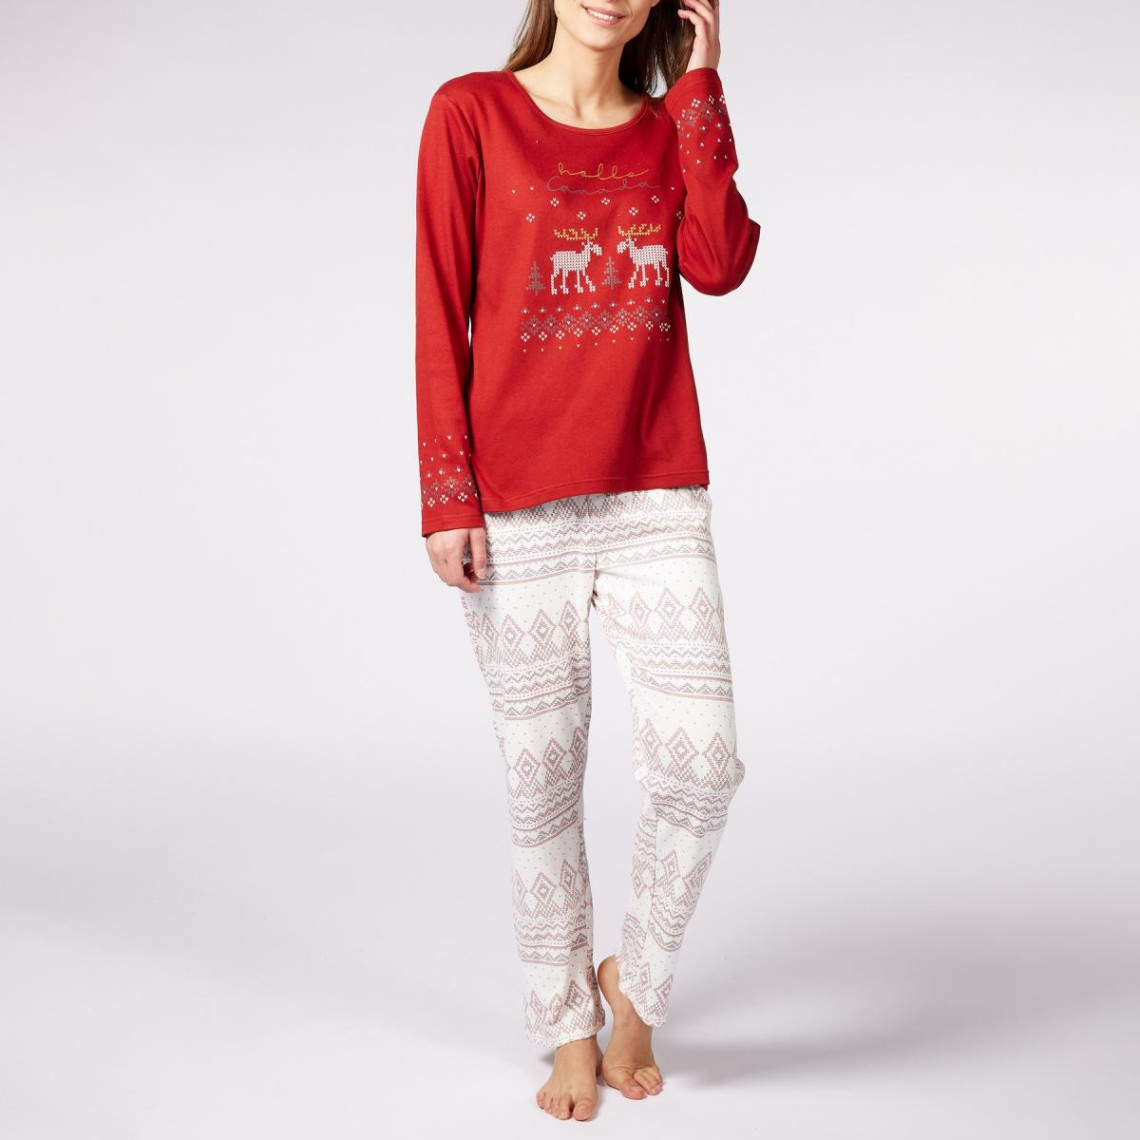 Pyjama Long femme en Coton - Rouge - Blanc et Terra Cotta à Motifs Rennes-Noël